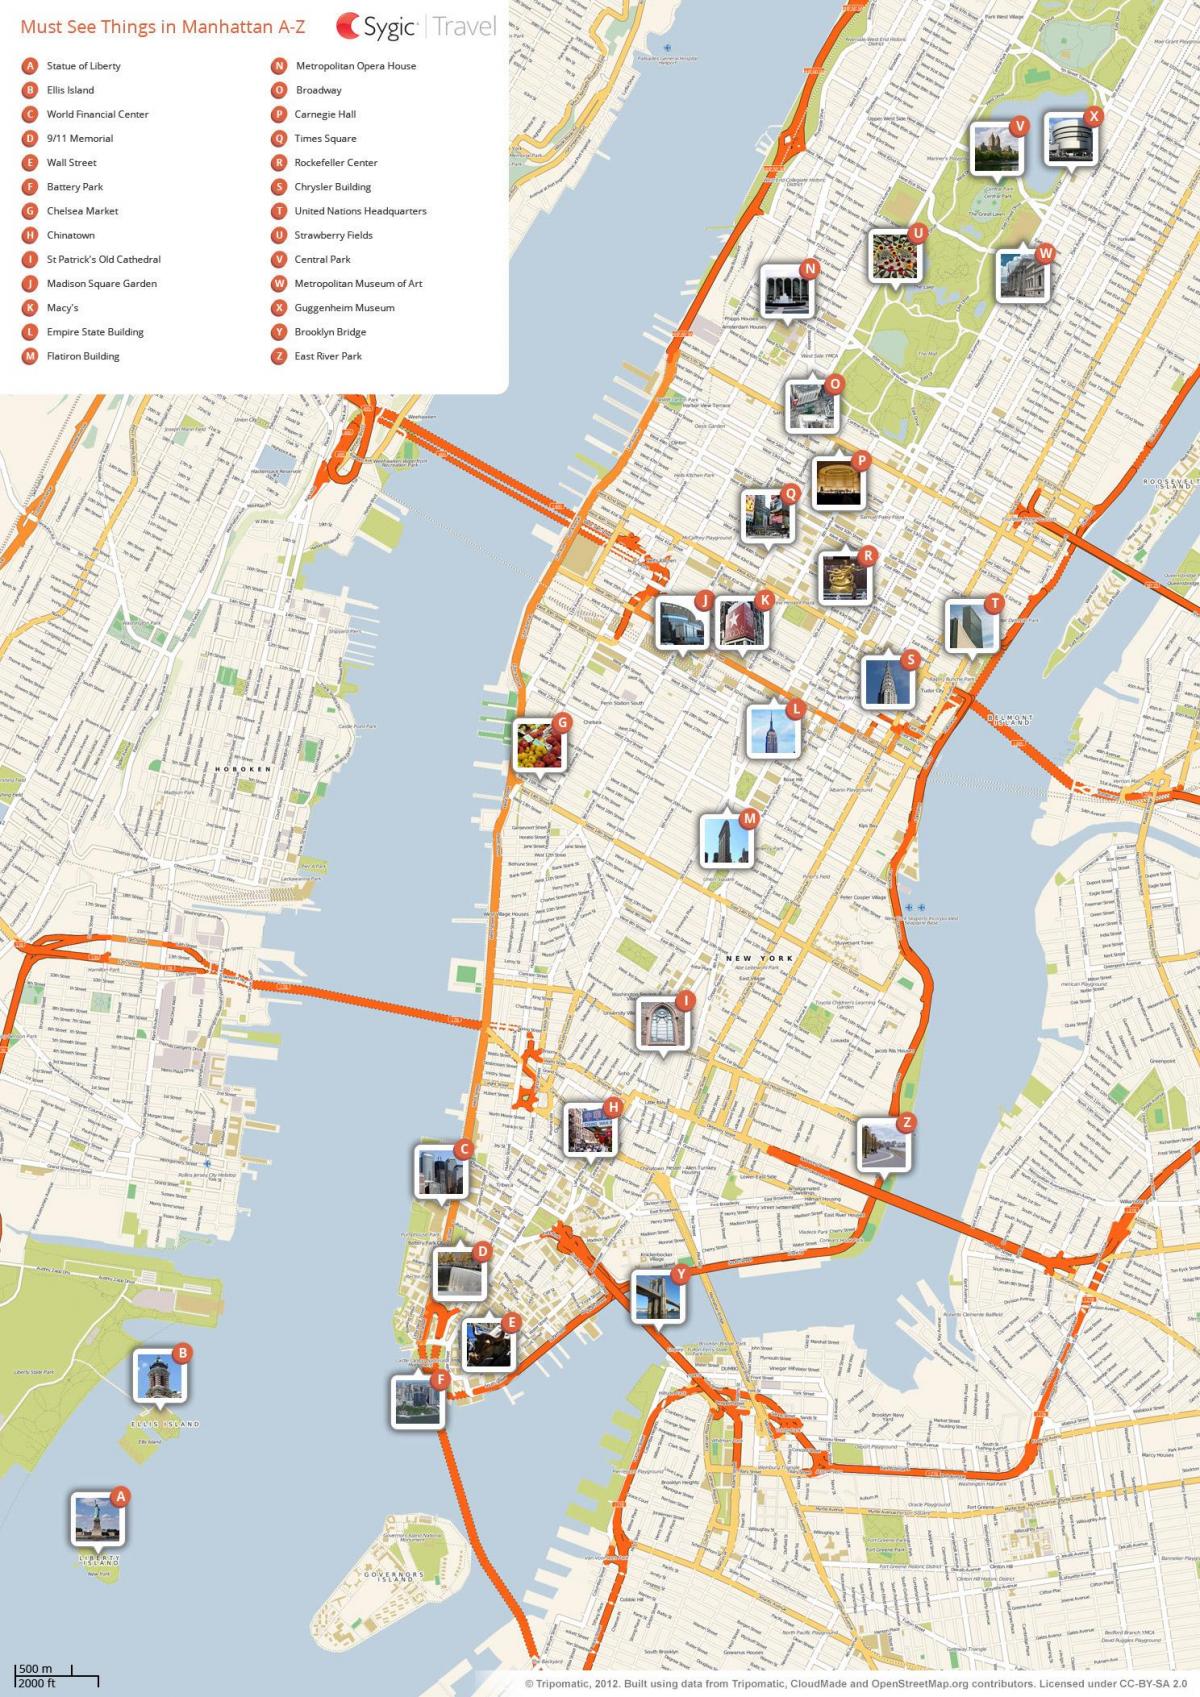 A Cidade de nova York atracções turísticas mapa